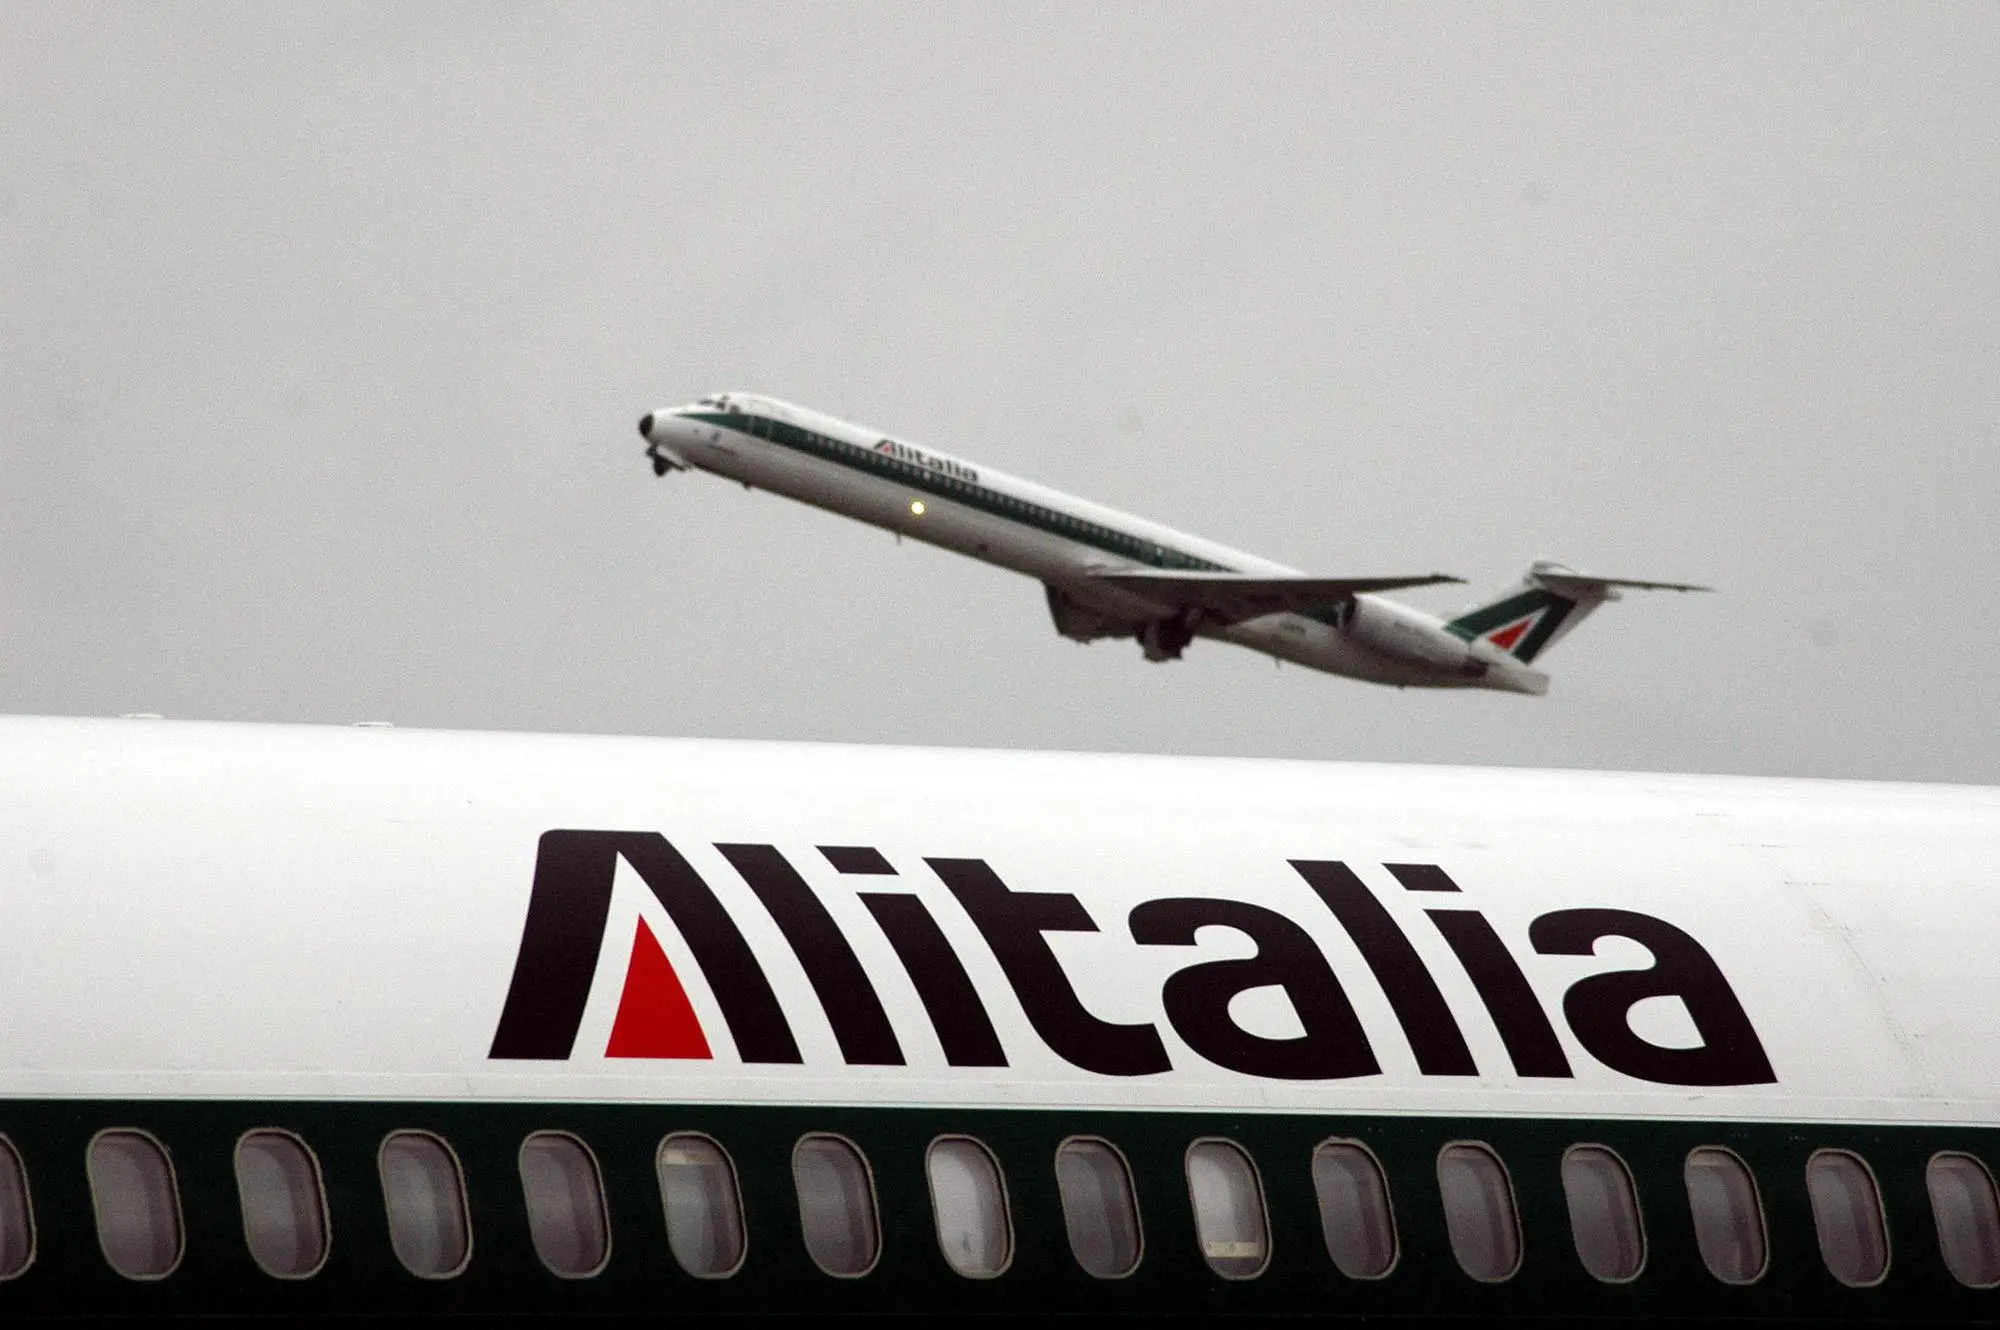 Un velivolo Alitalia in decollo (archivio)